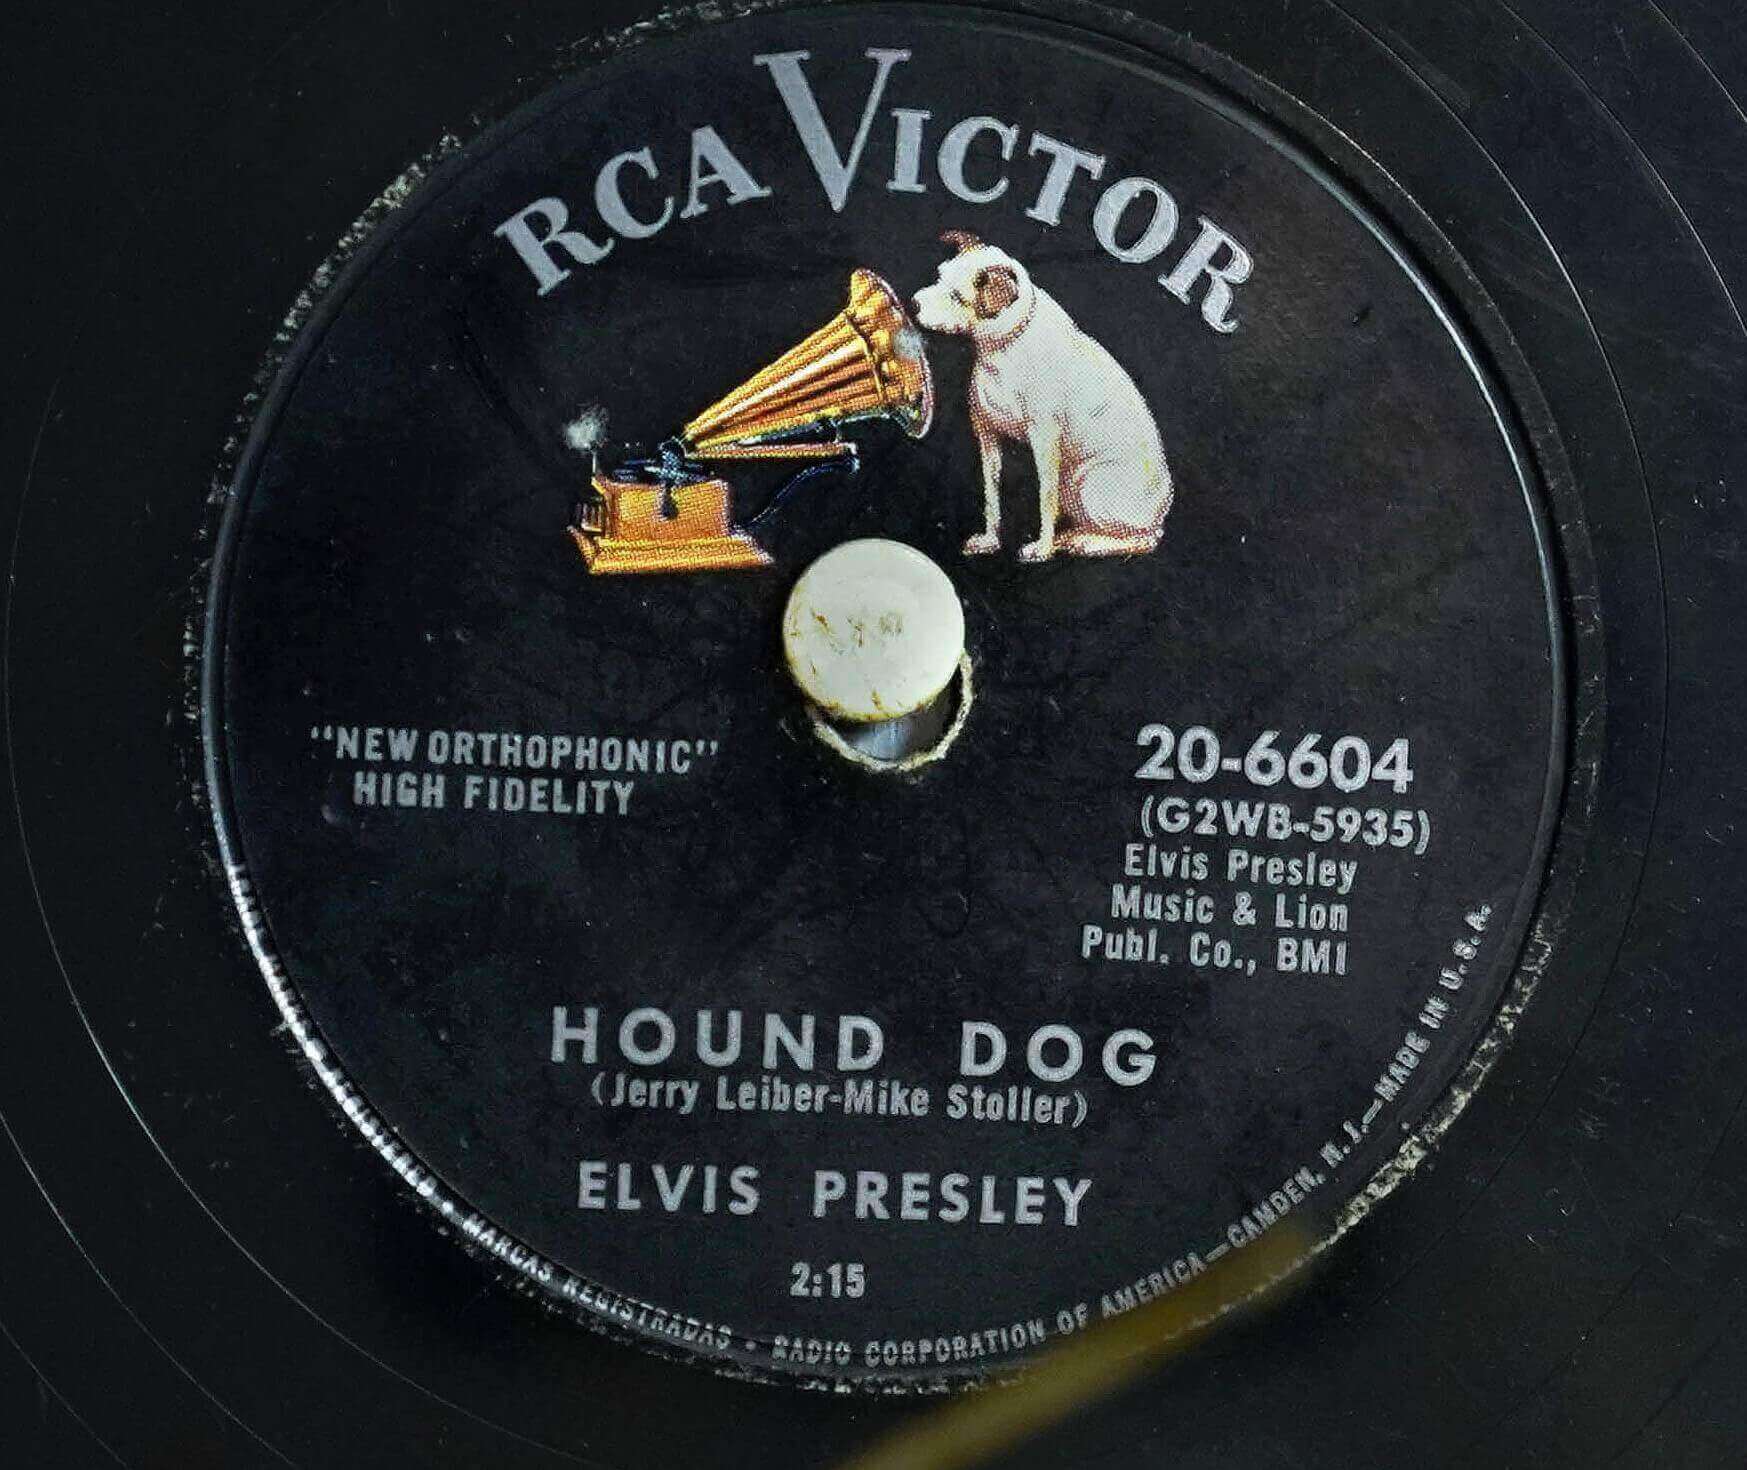 A vinyl copy of Elvis Presley's "Hound Dog"